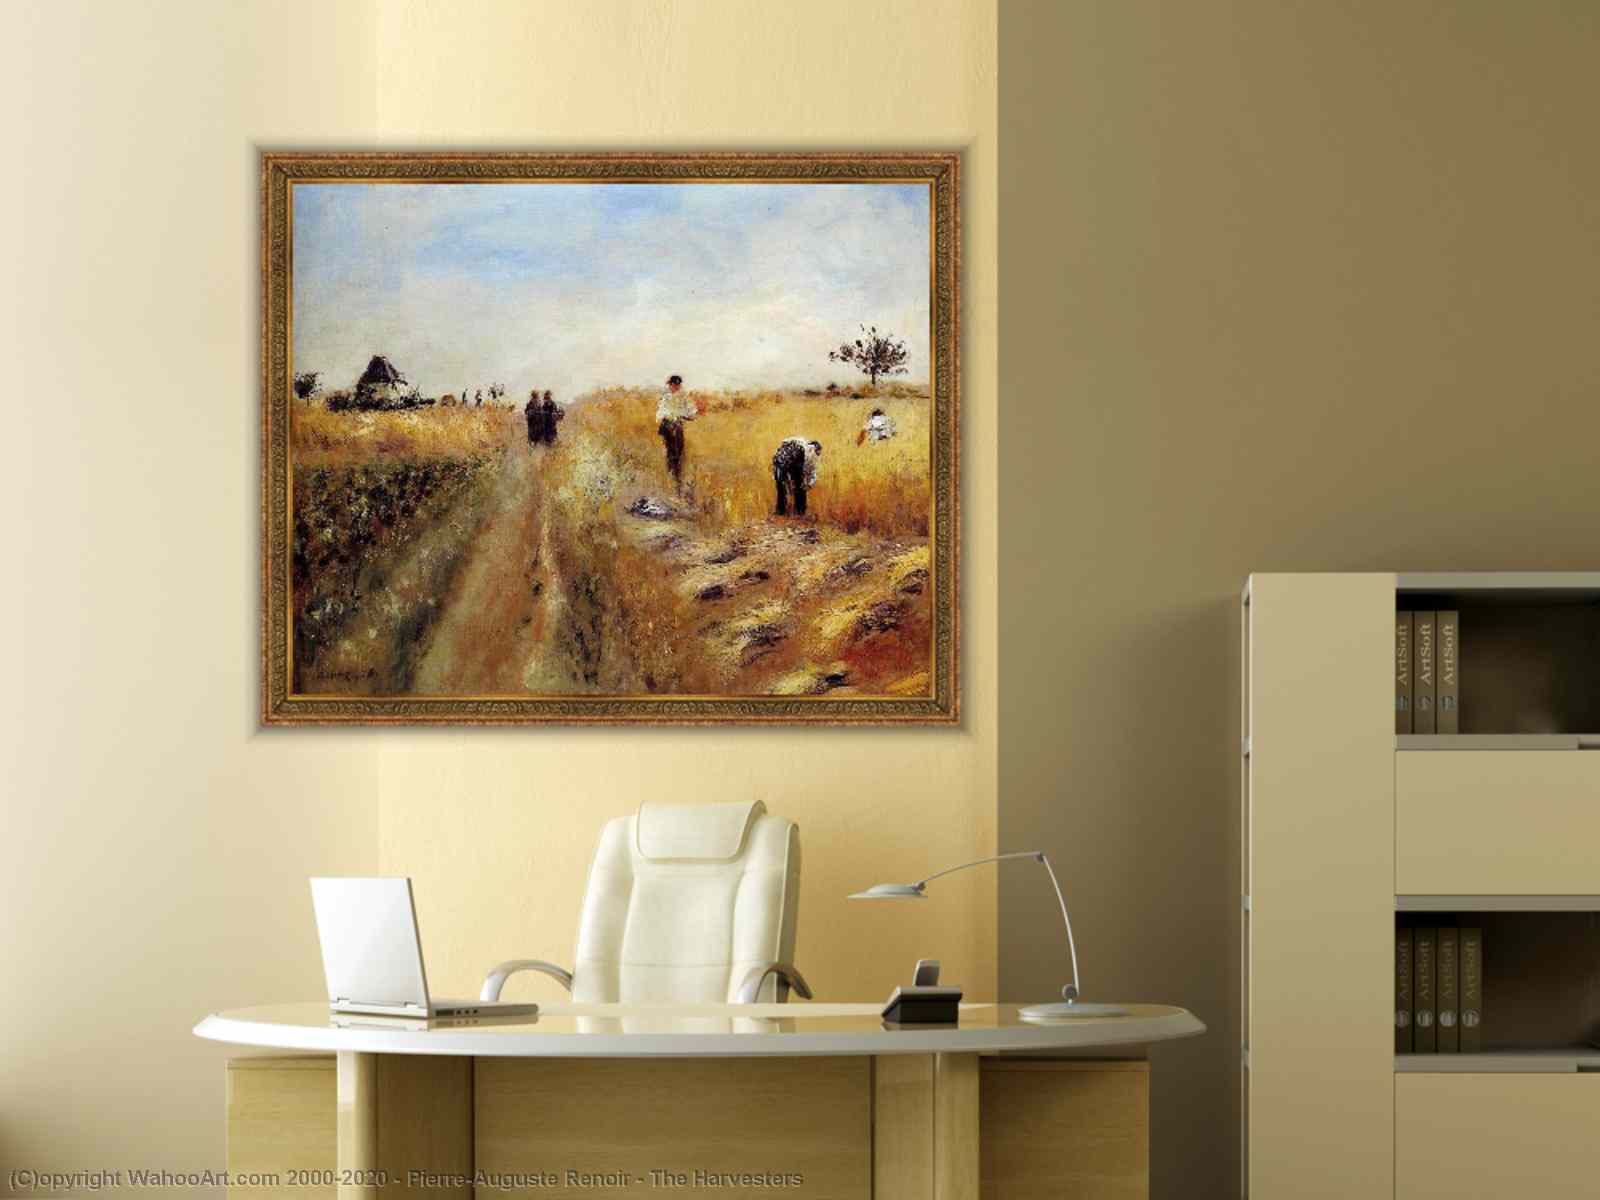 Riproduzioni Di Quadri Impressionista Gli Harvester di Pierre-Auguste Renoir